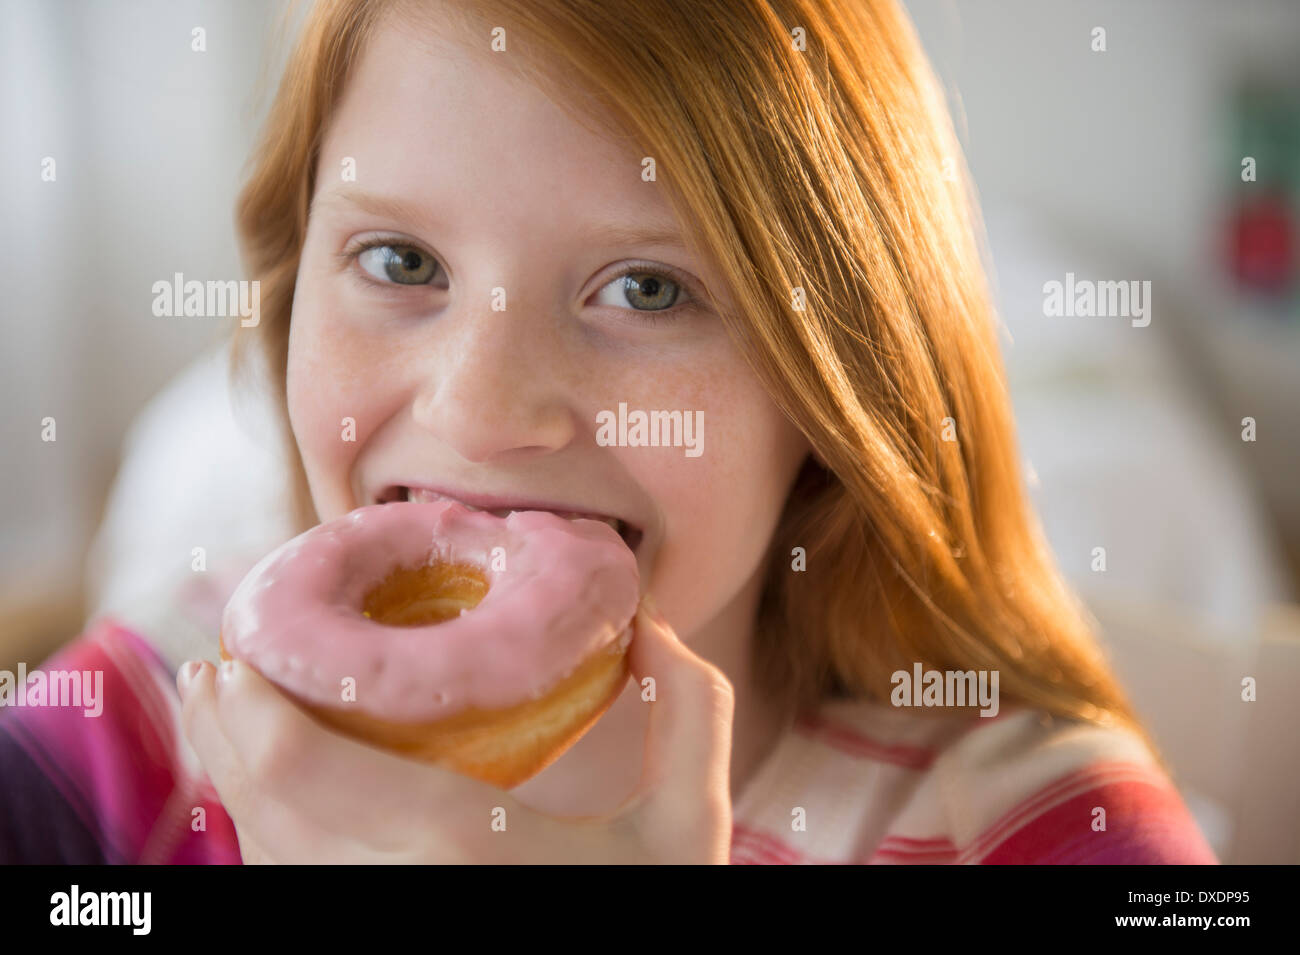 Portrait of girl (12-13) eating doughnut Stock Photo